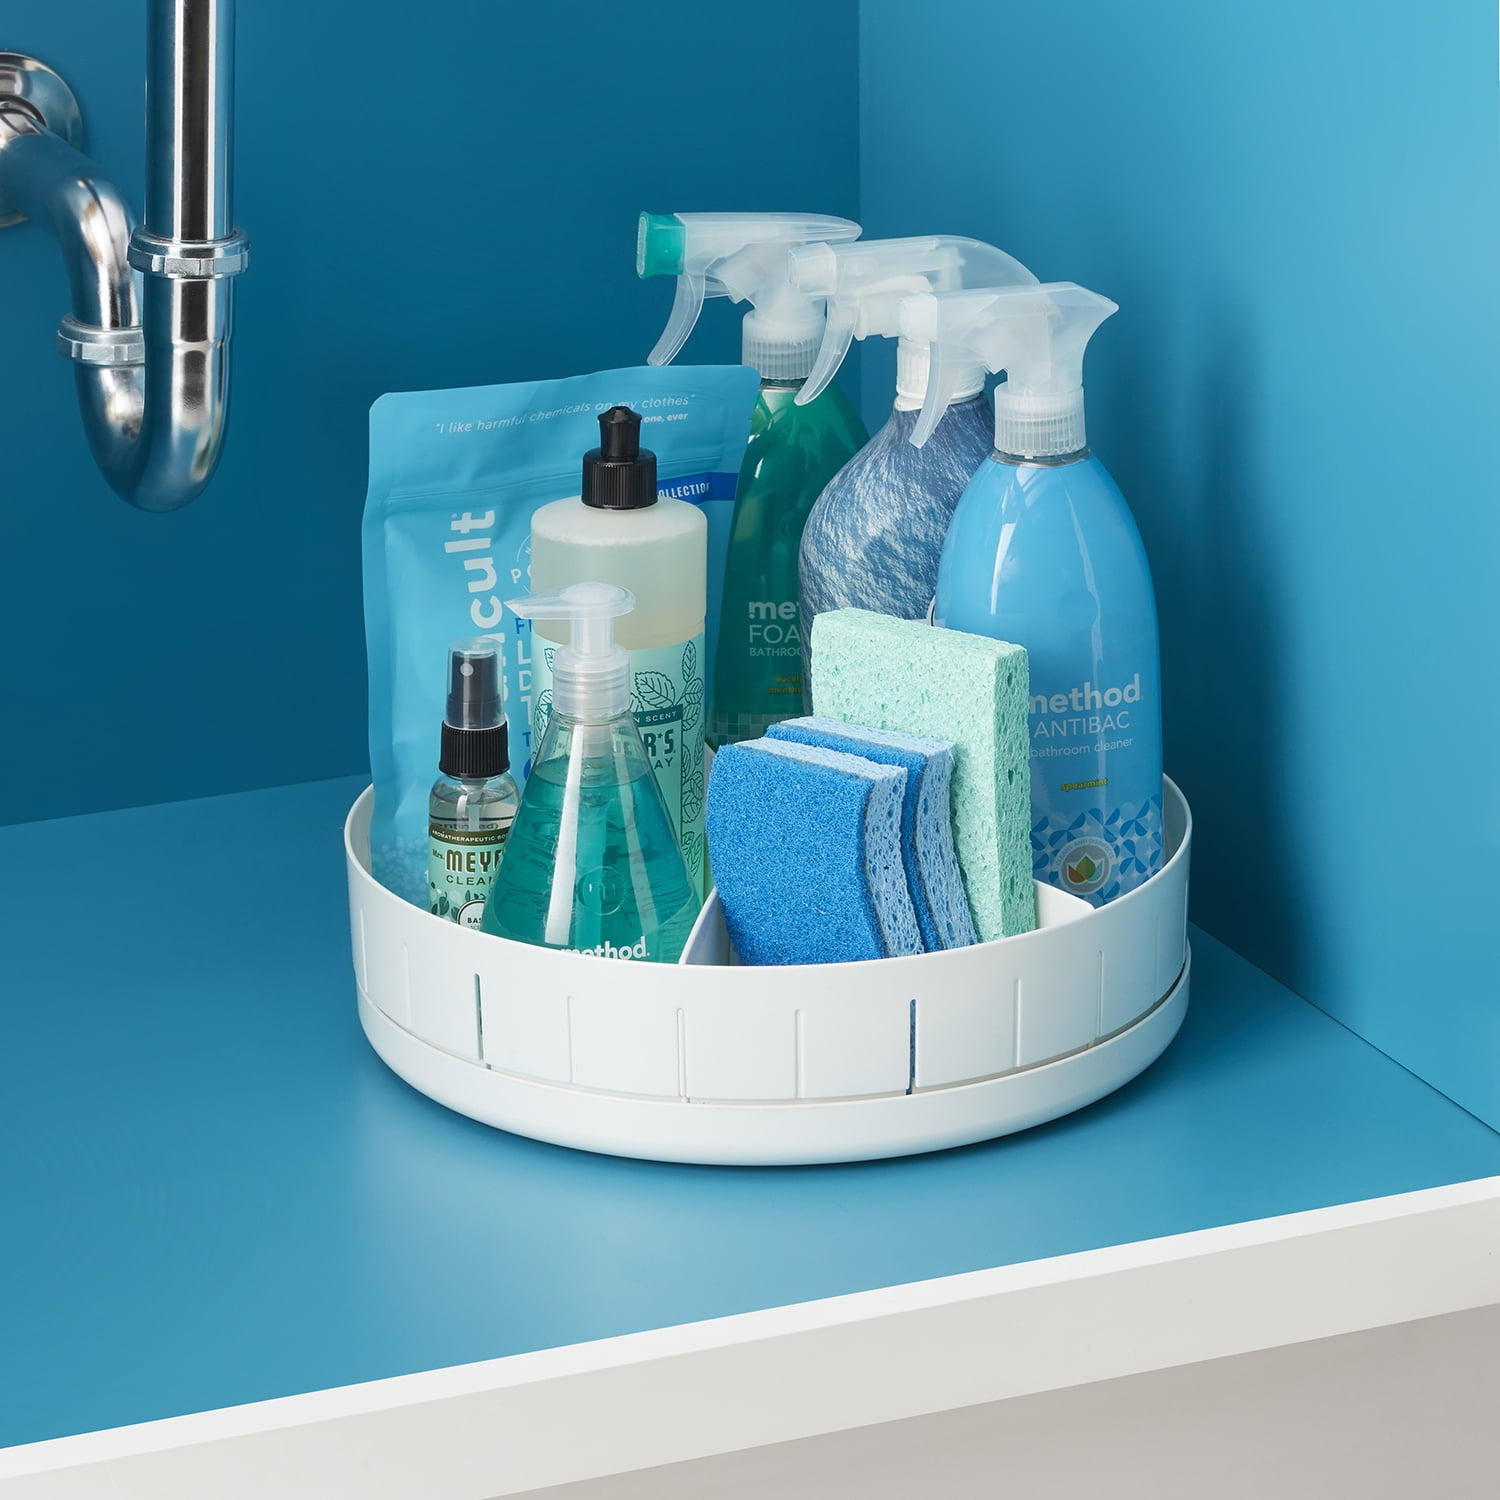 5 Genius Under-Sink Storage Solutions. #DIY # KitchenStroage #  BathroomStorage #Organizing #S…